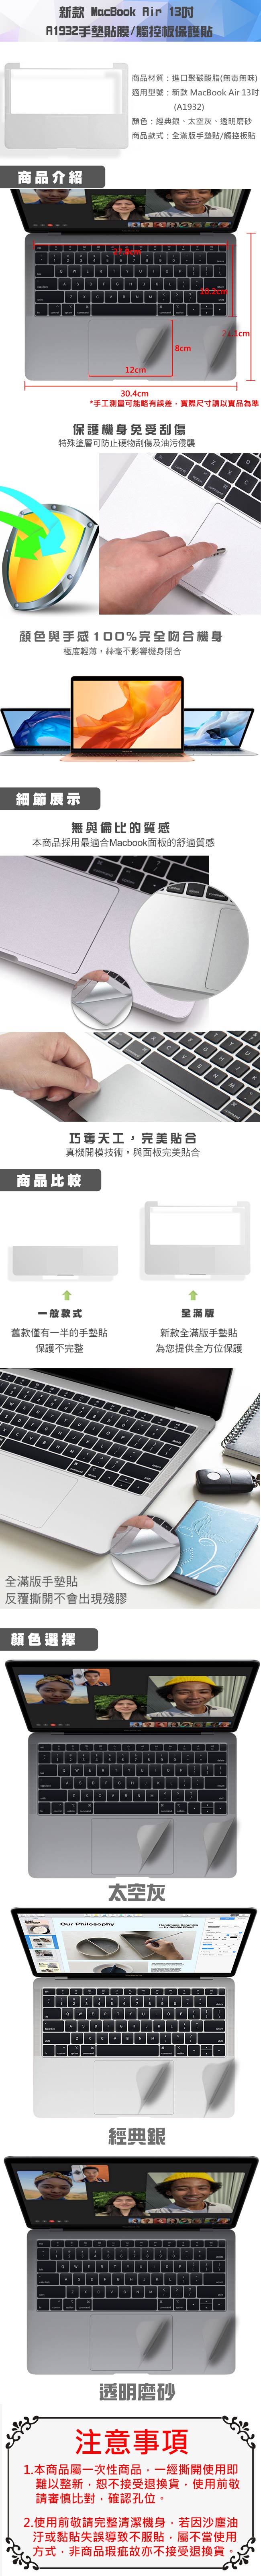 新款 MacBook Air 13吋 A1932手墊貼膜/觸控板保護貼